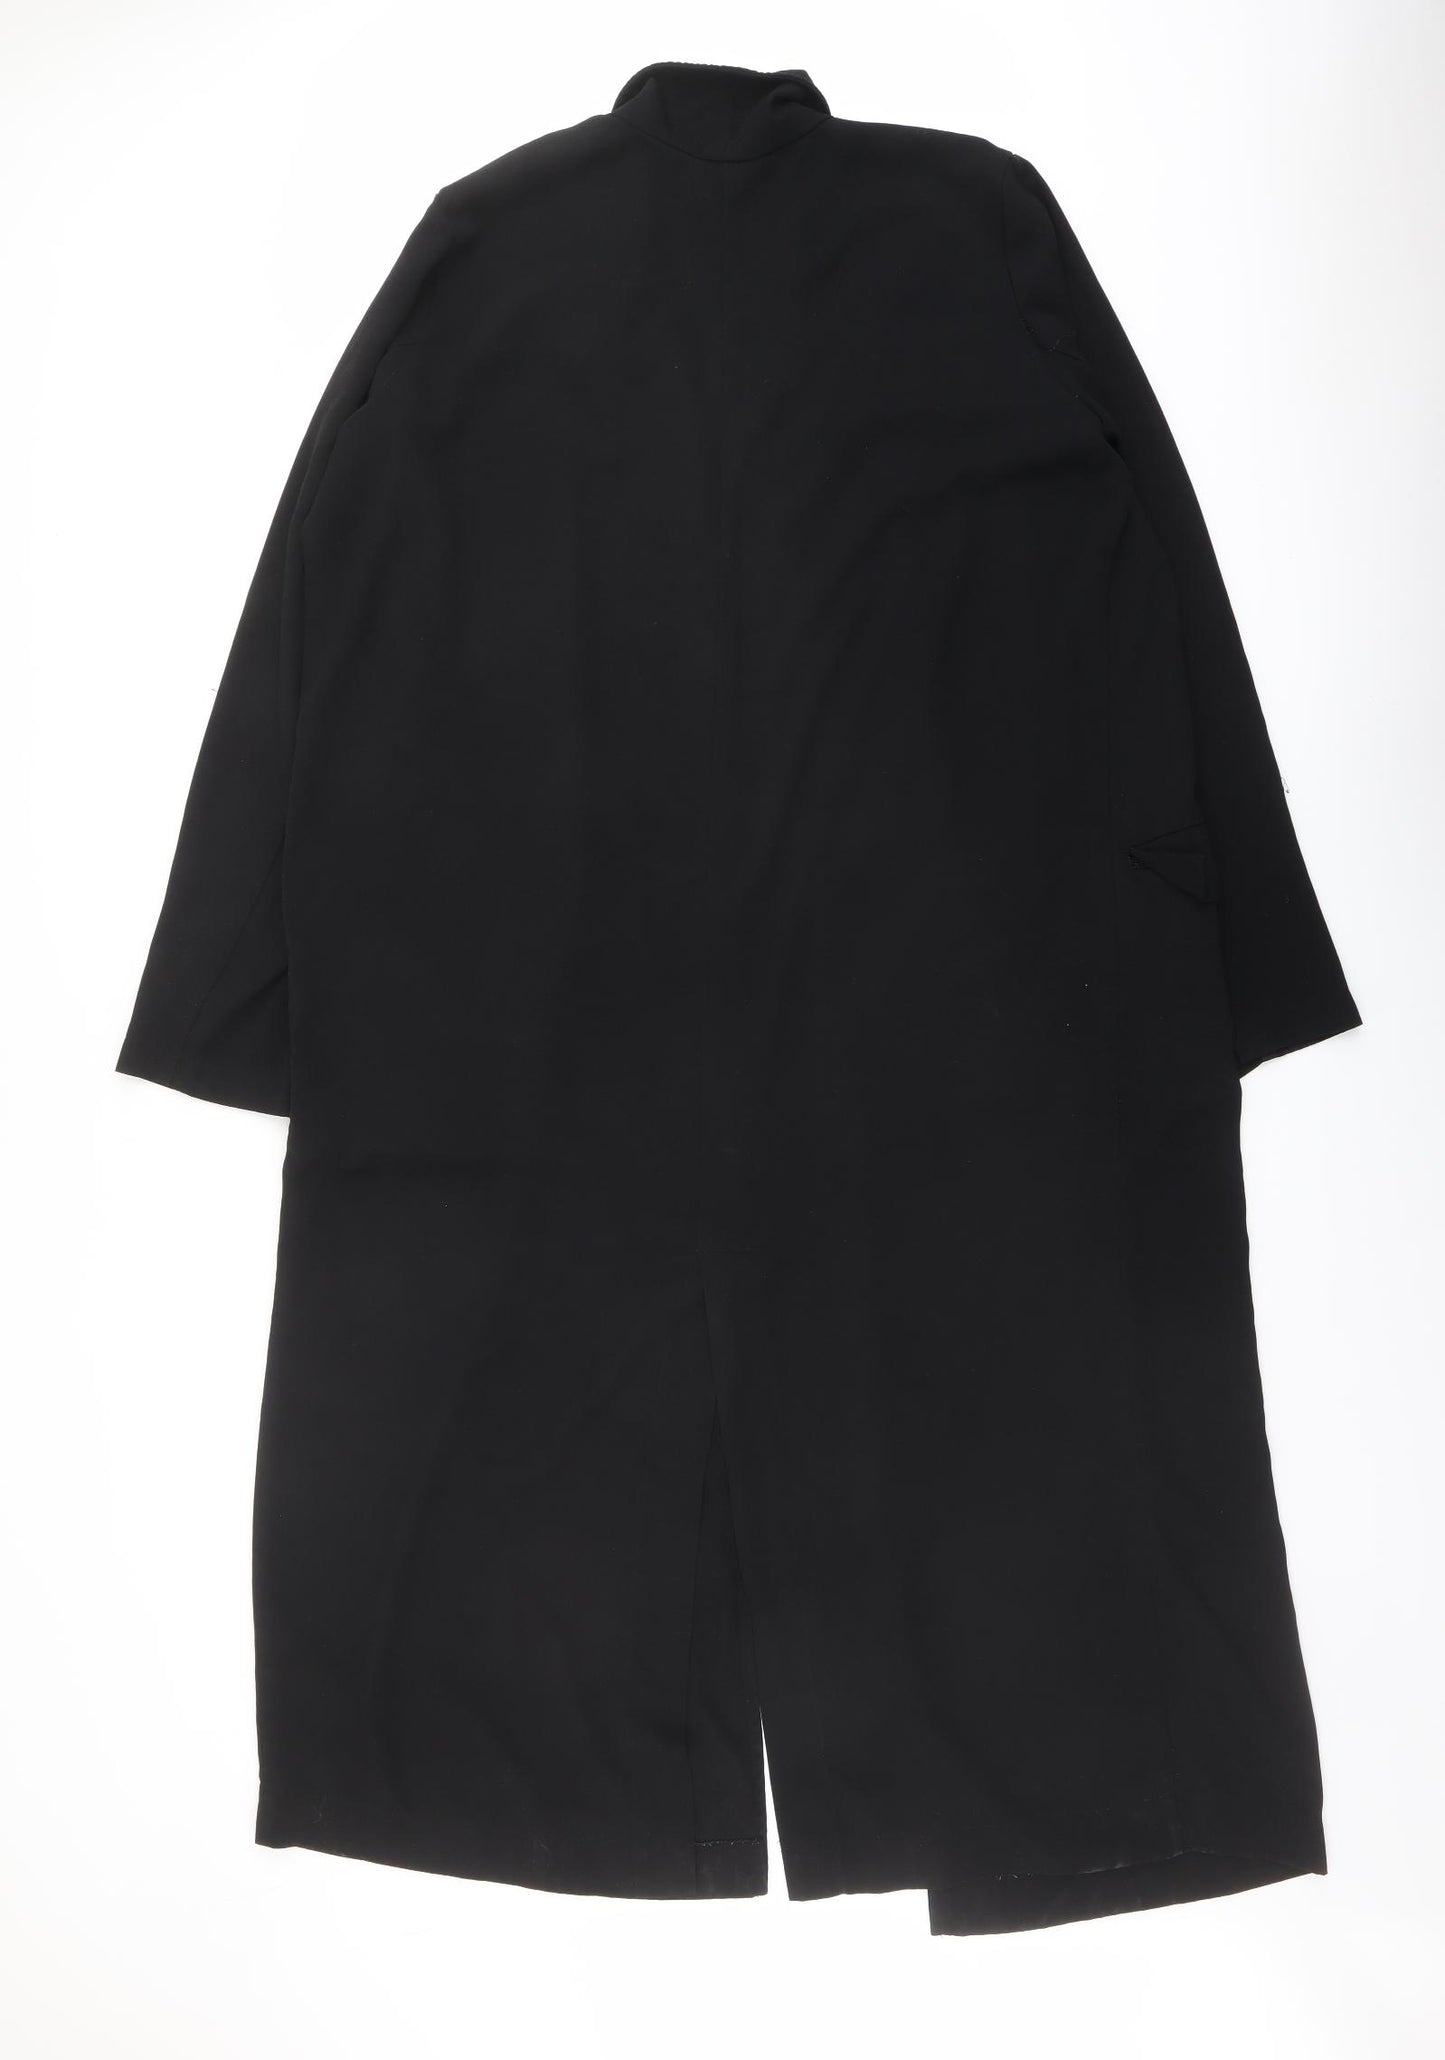 ASOS Womens Black Kimono Coat Size 14